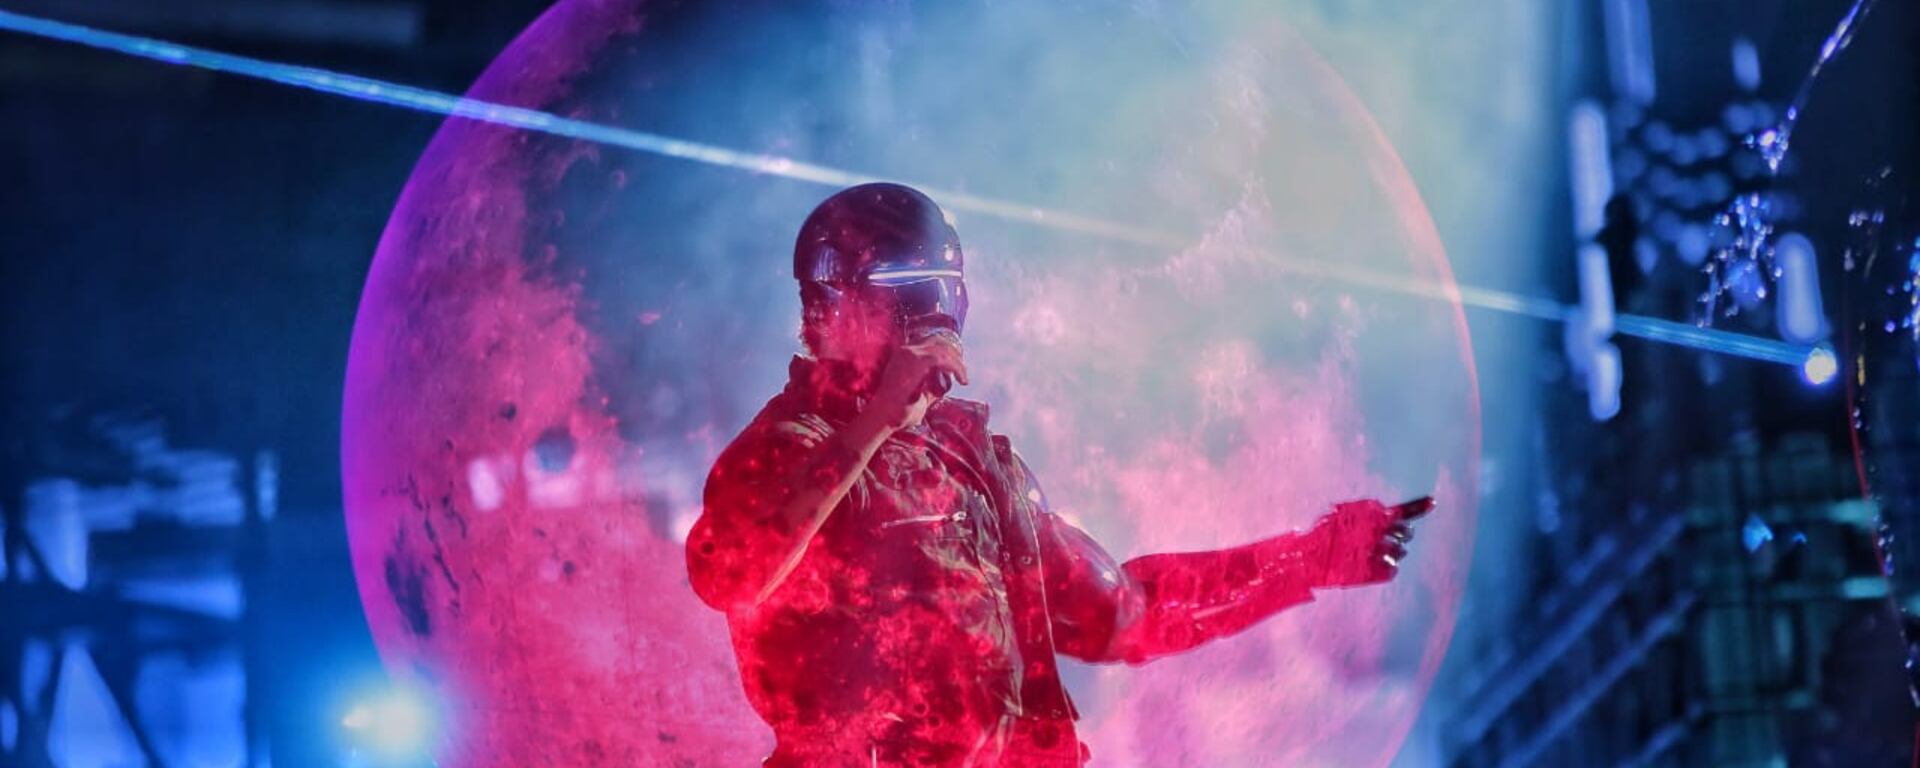 The Weeknd en Lima: el efectivo show de, quizá, ¿la última megaestrella que cante en el Perú? | CRÓNICA